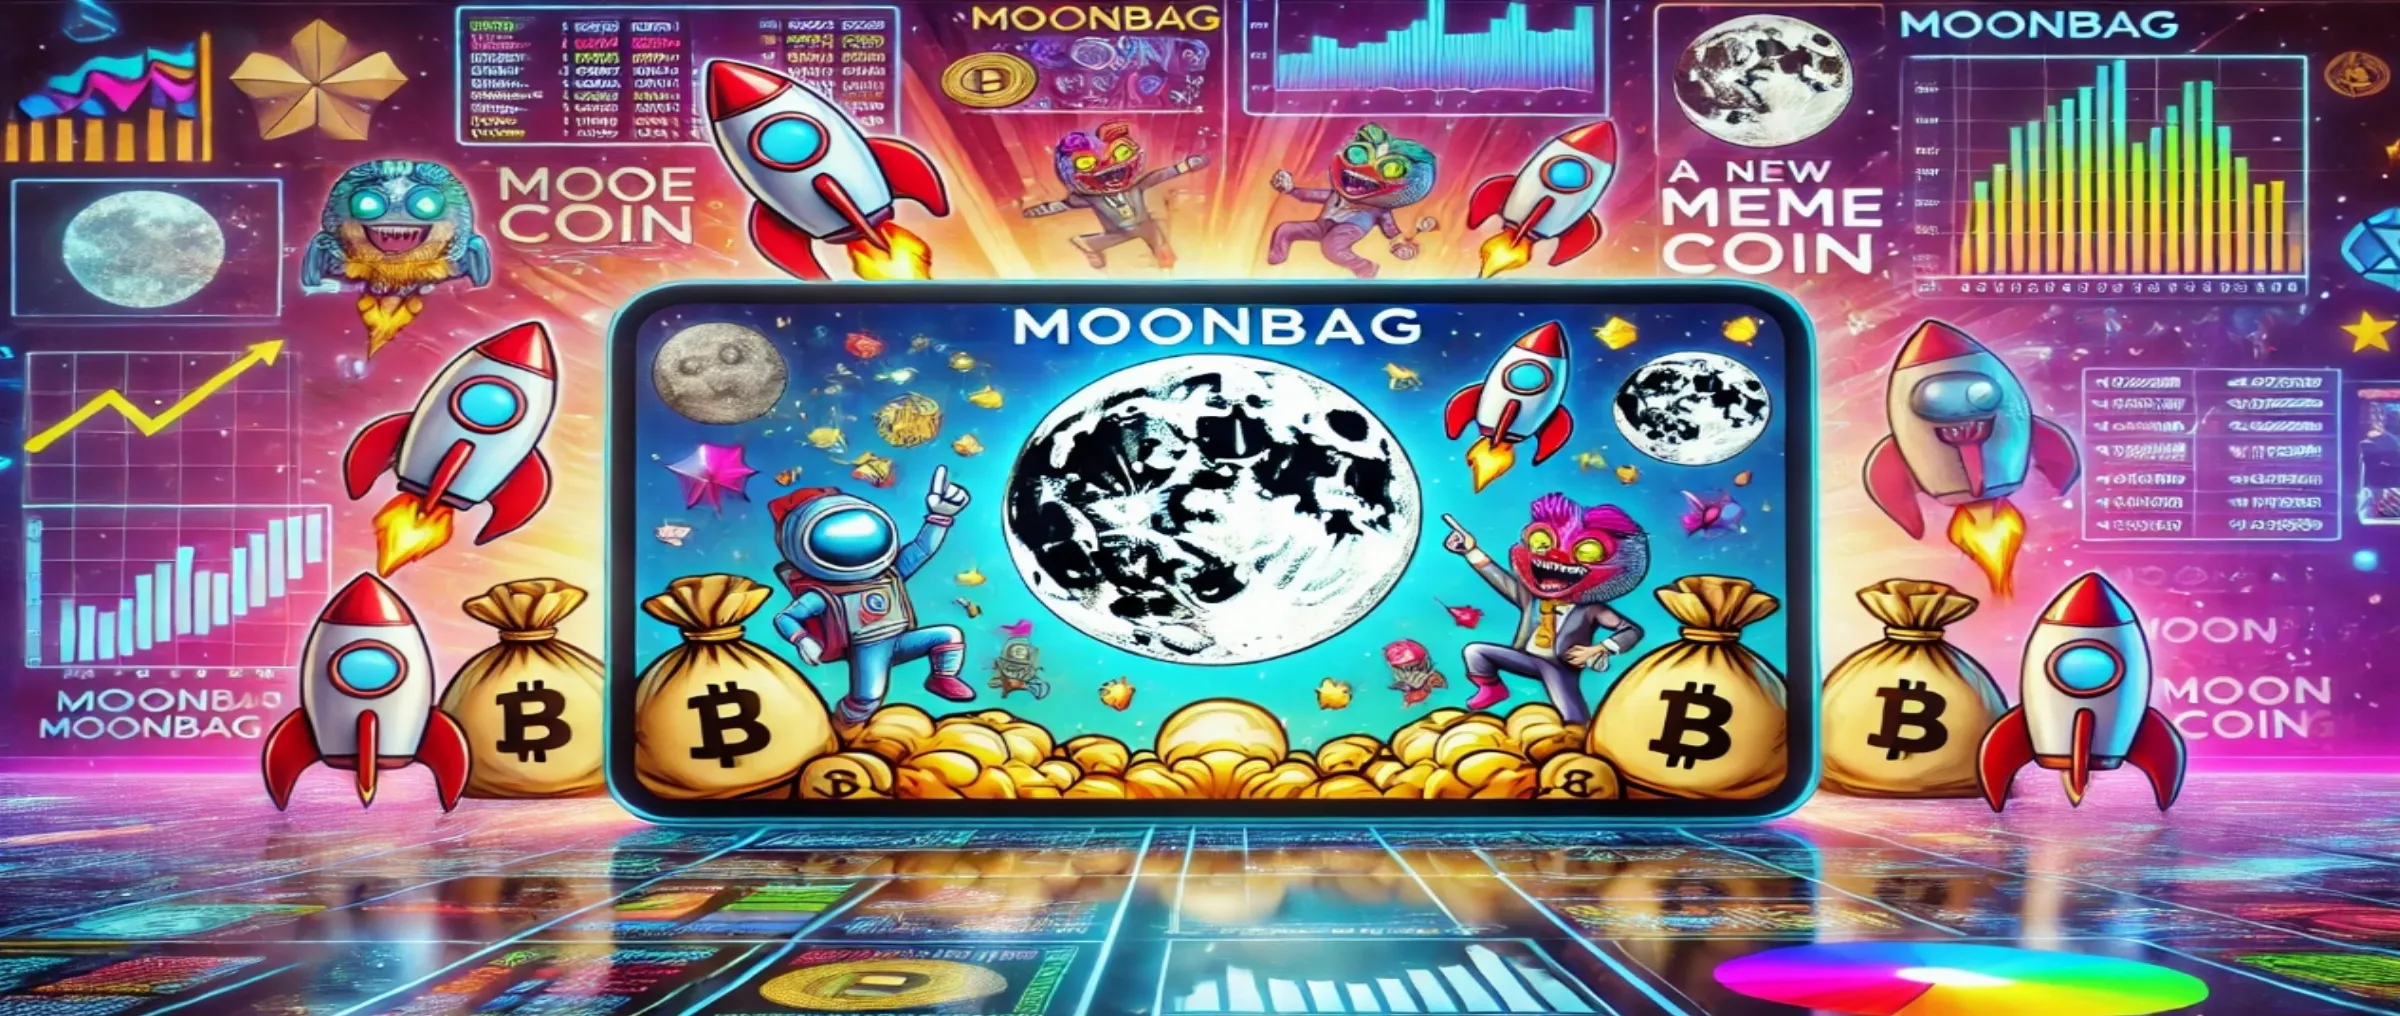 MoonBag - новый Мем-коин в мире криптовалют